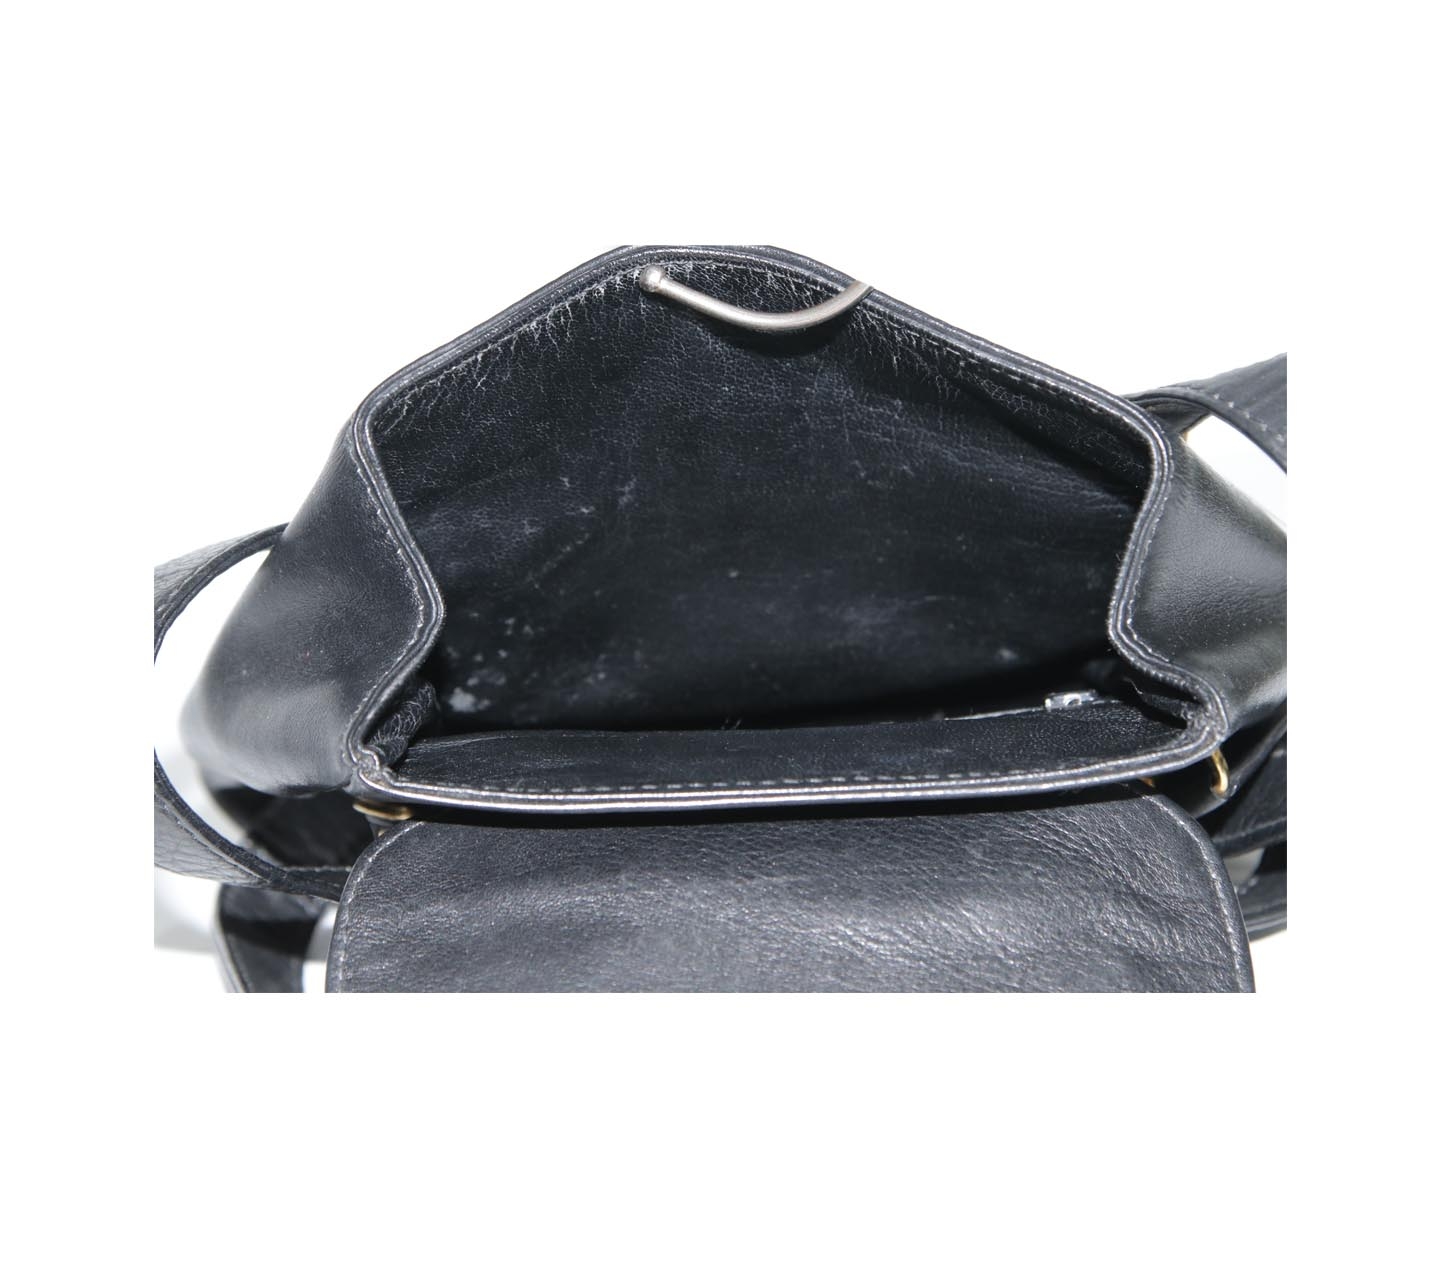 Gianni Versace Black Leather Vintage Shoulder Bag